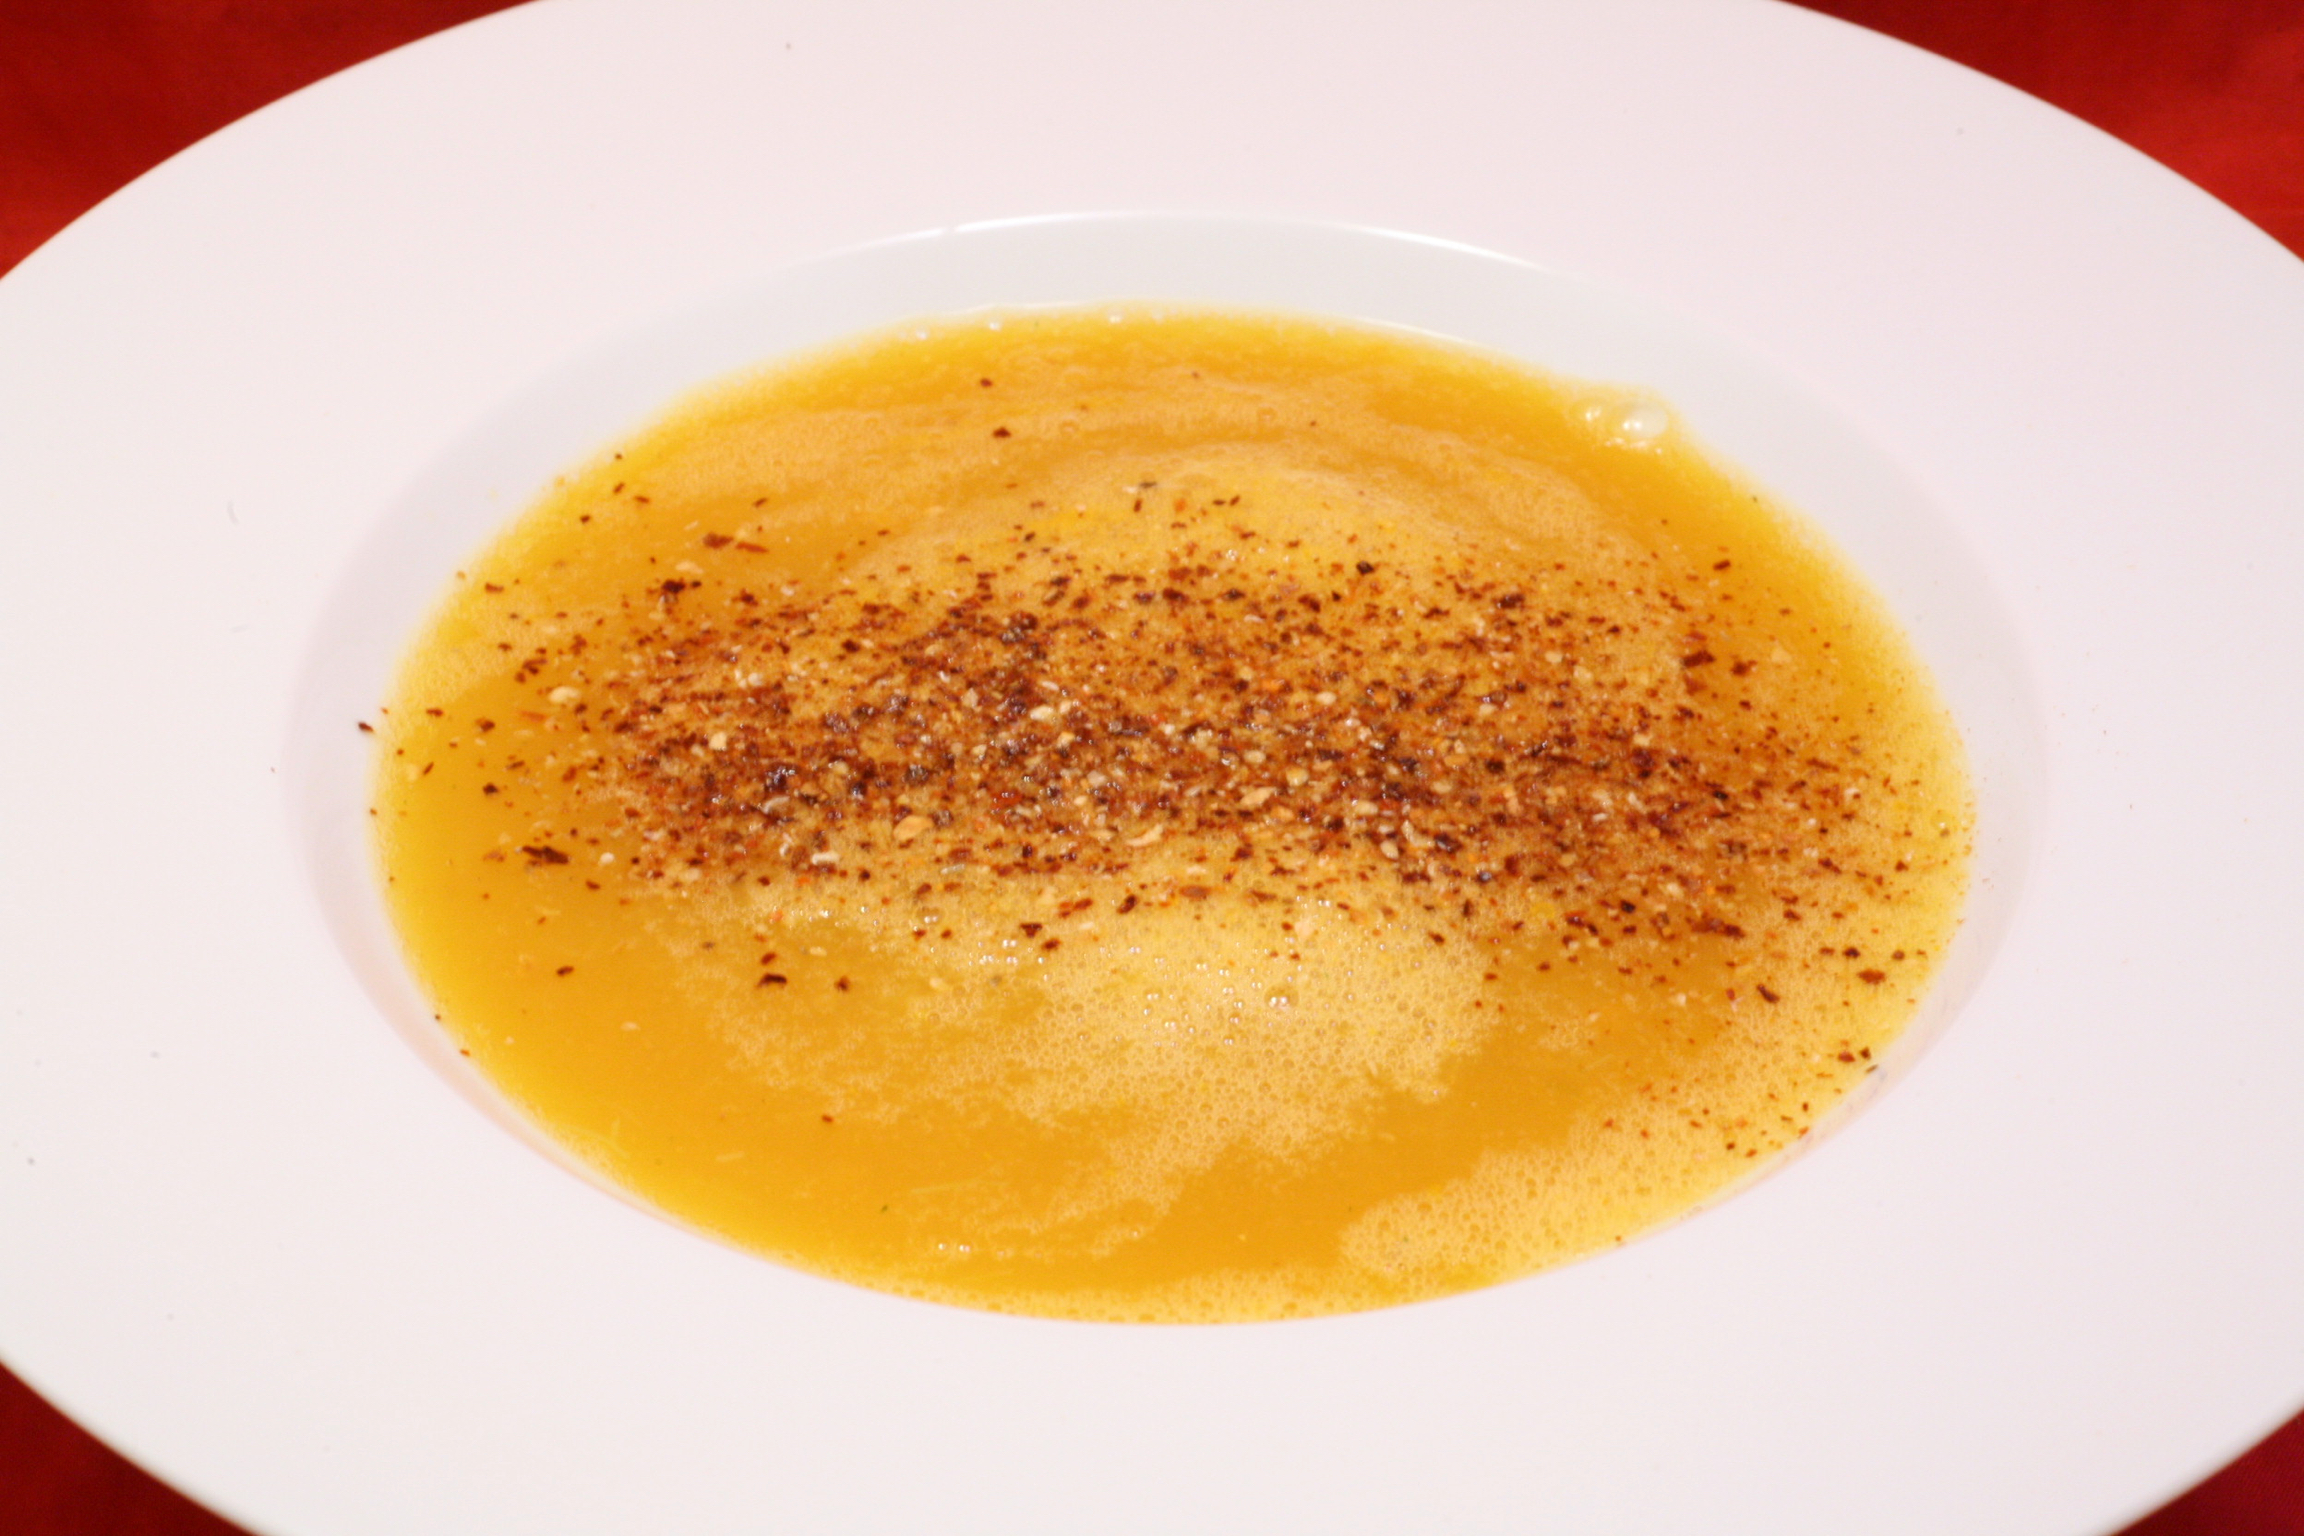 Wurzel-Stangensellerie-Suppe mit Chili